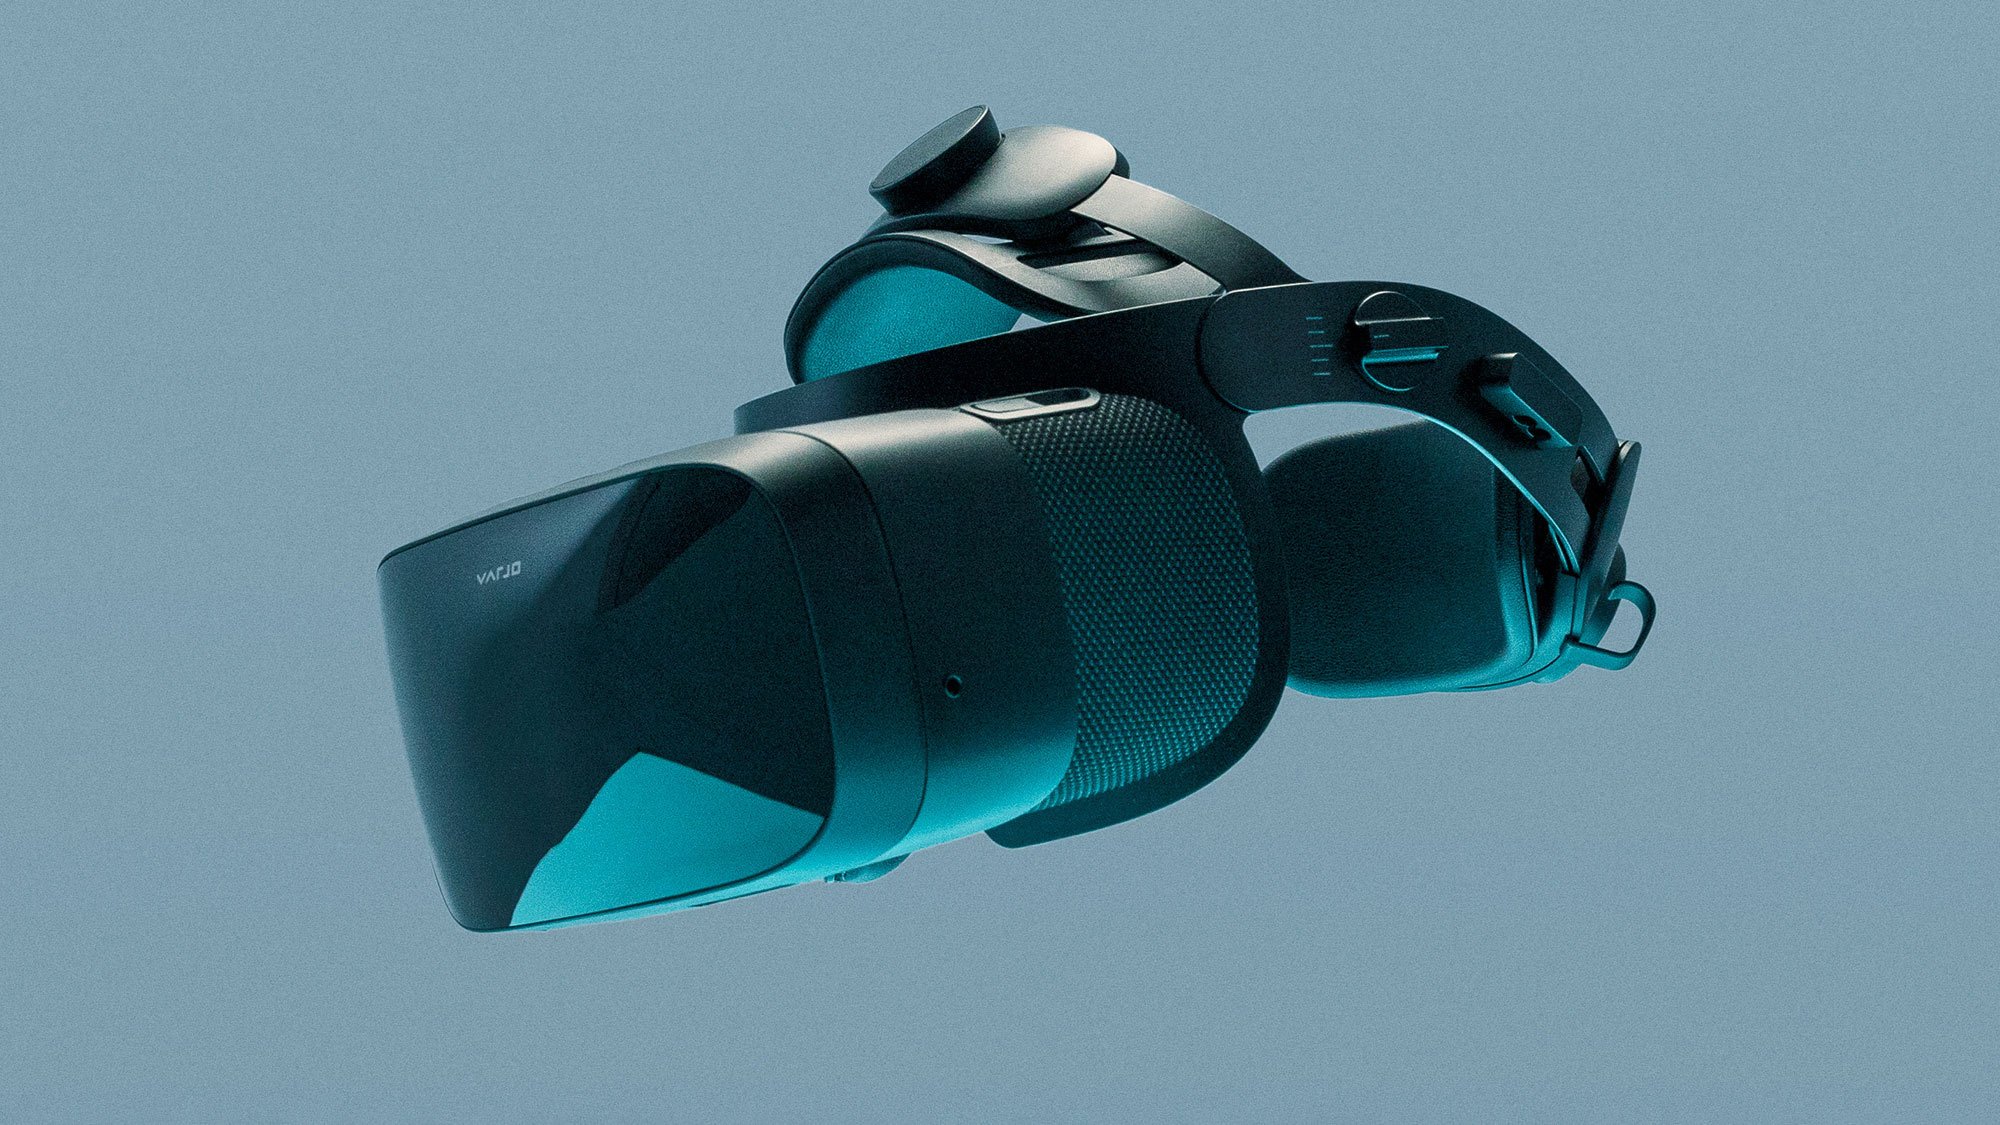 Varjo Aero שואפת לדחוף את הגבולות של PC VR ברזולוציה גבוהה: הדגמה מעשית